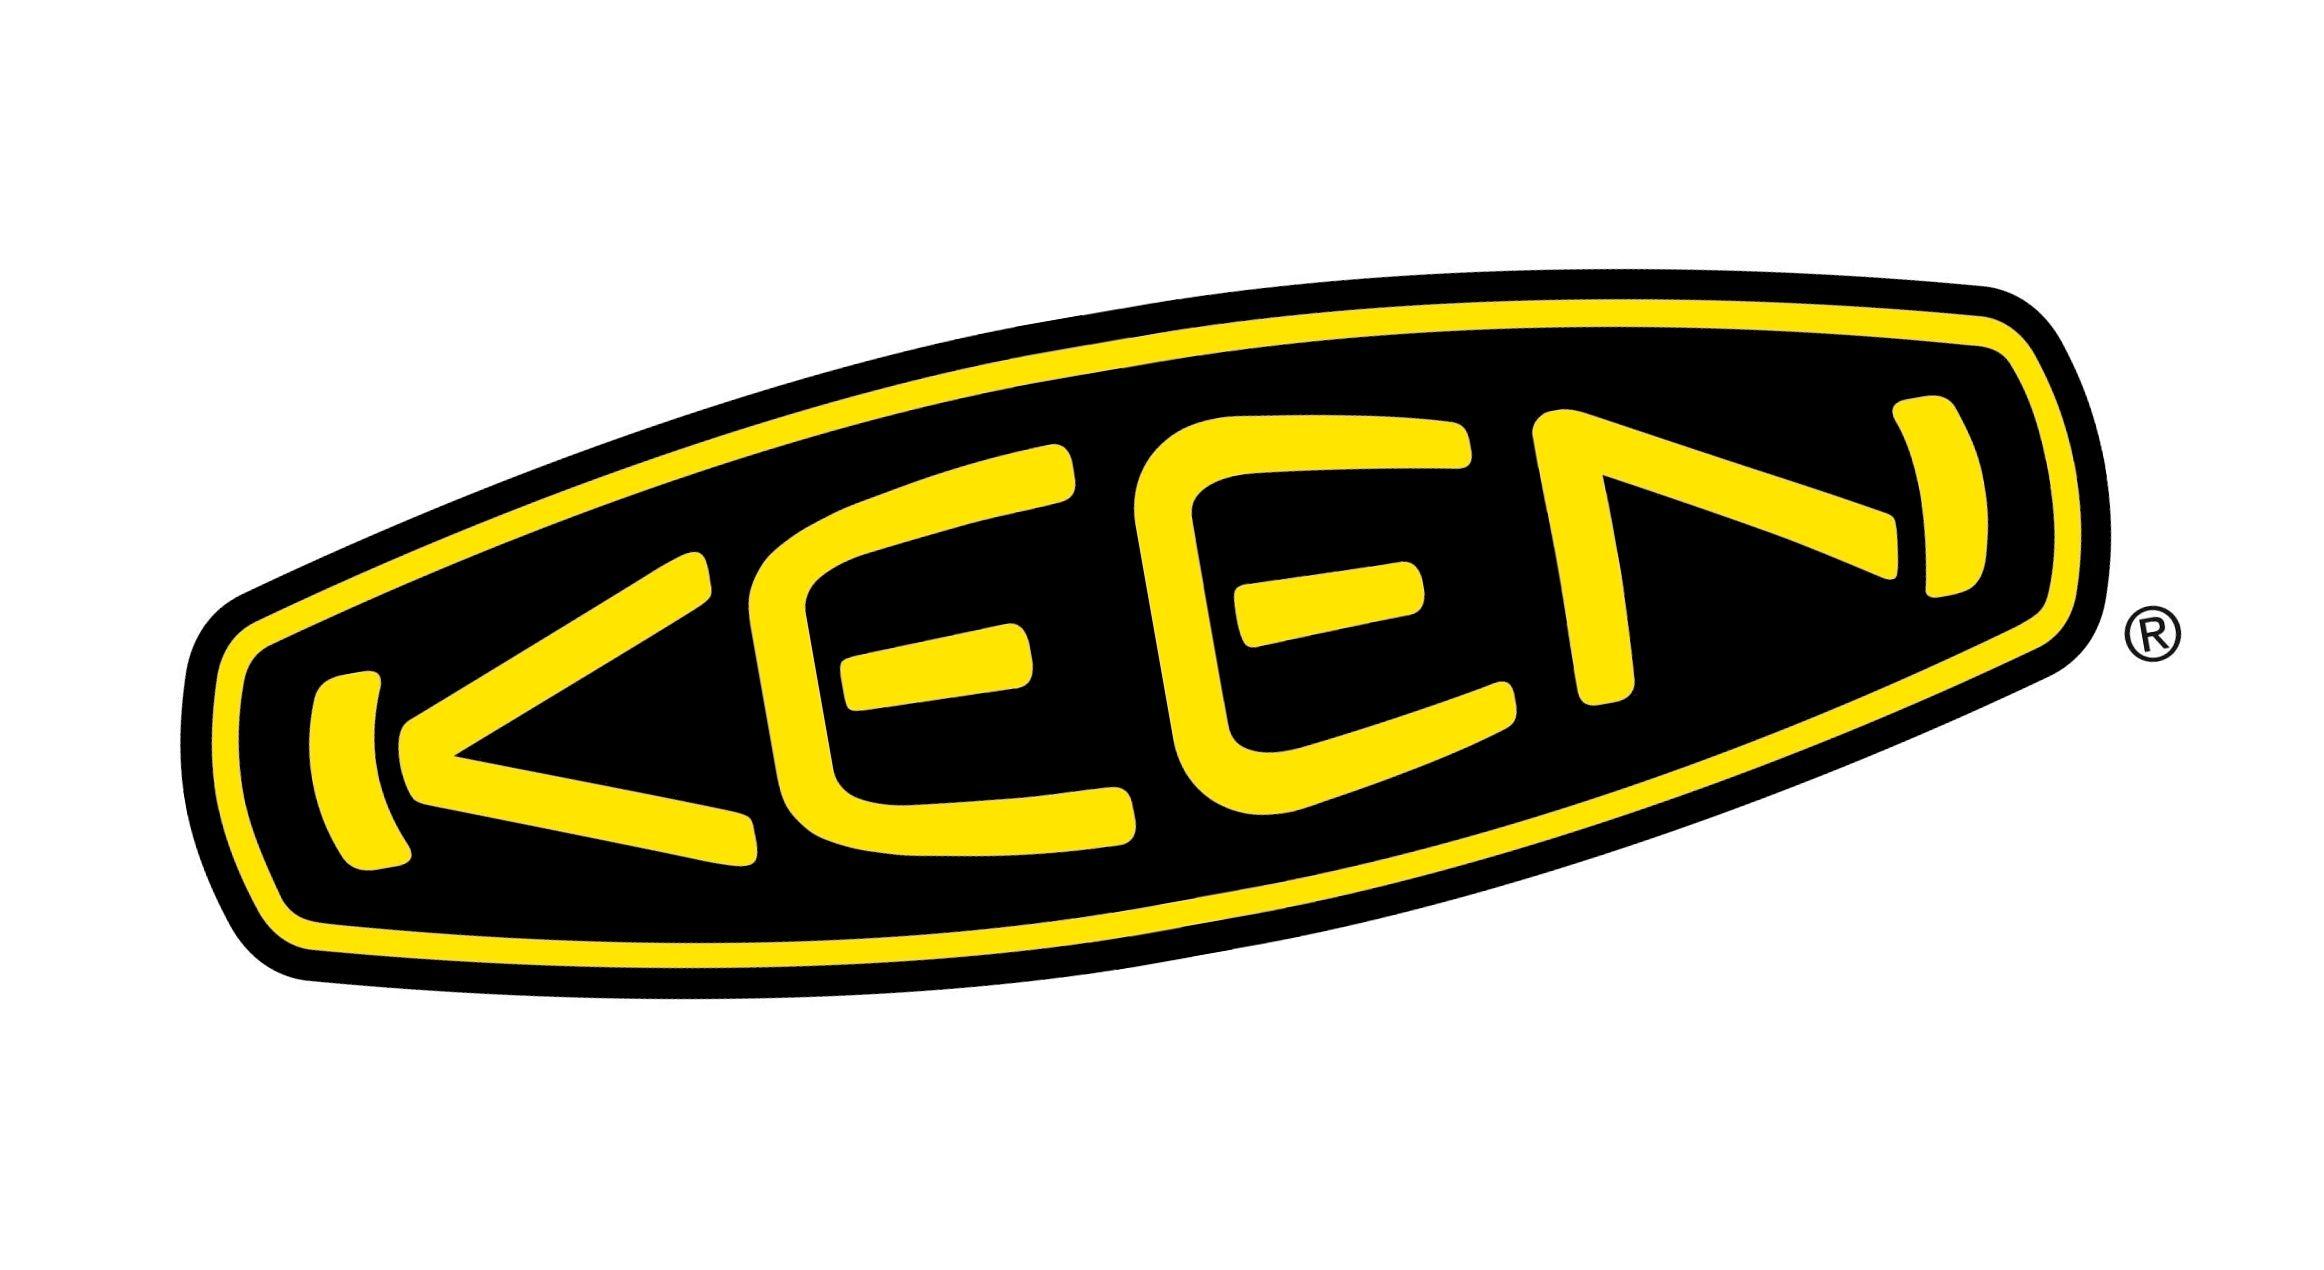 Keen Logo - Keen